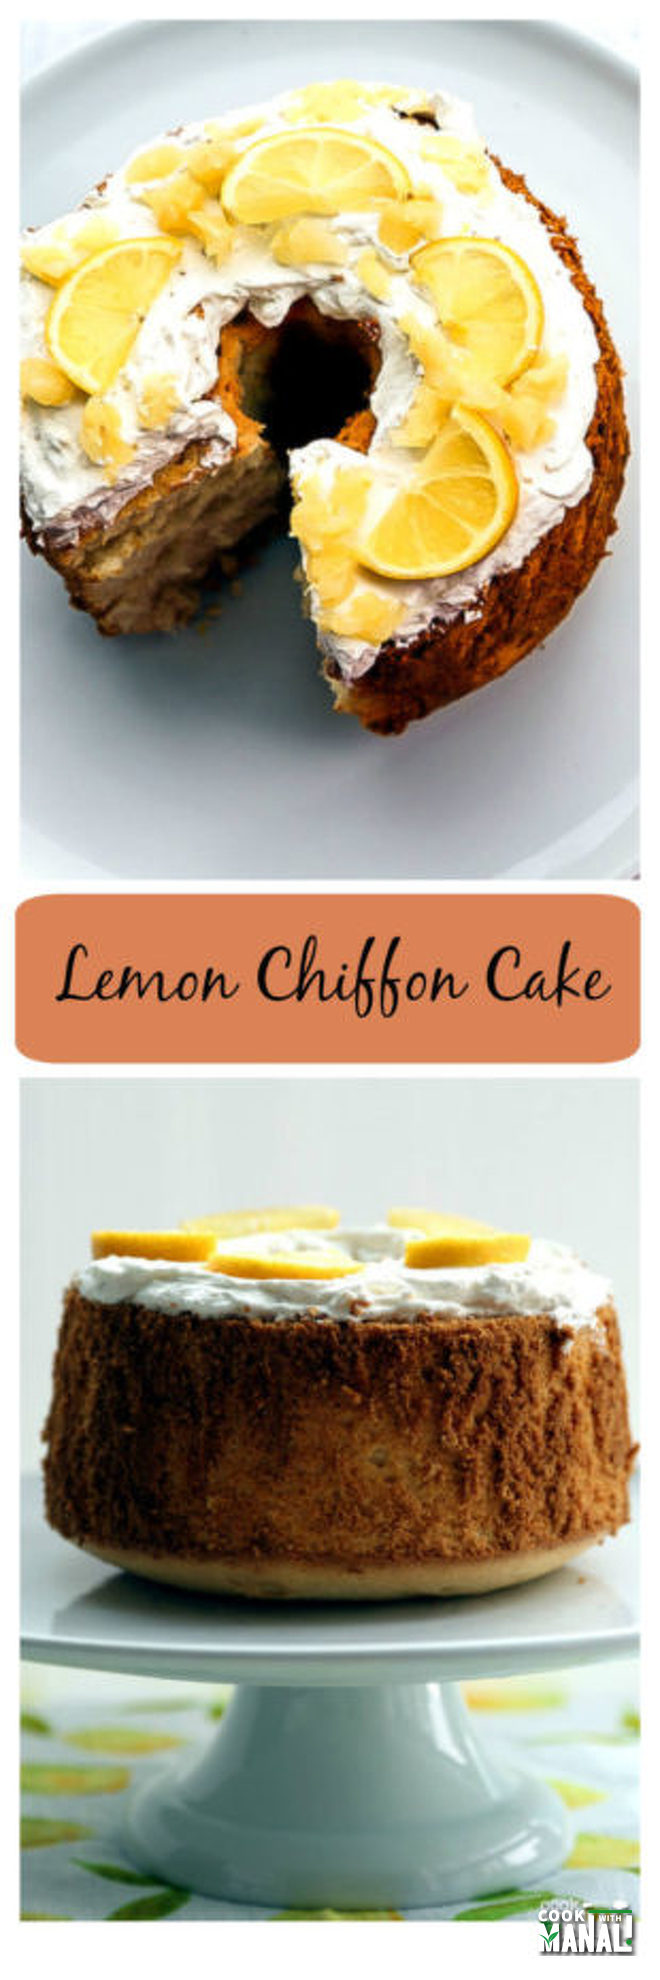 Lemon Chiffon Cake - Cook With Manali